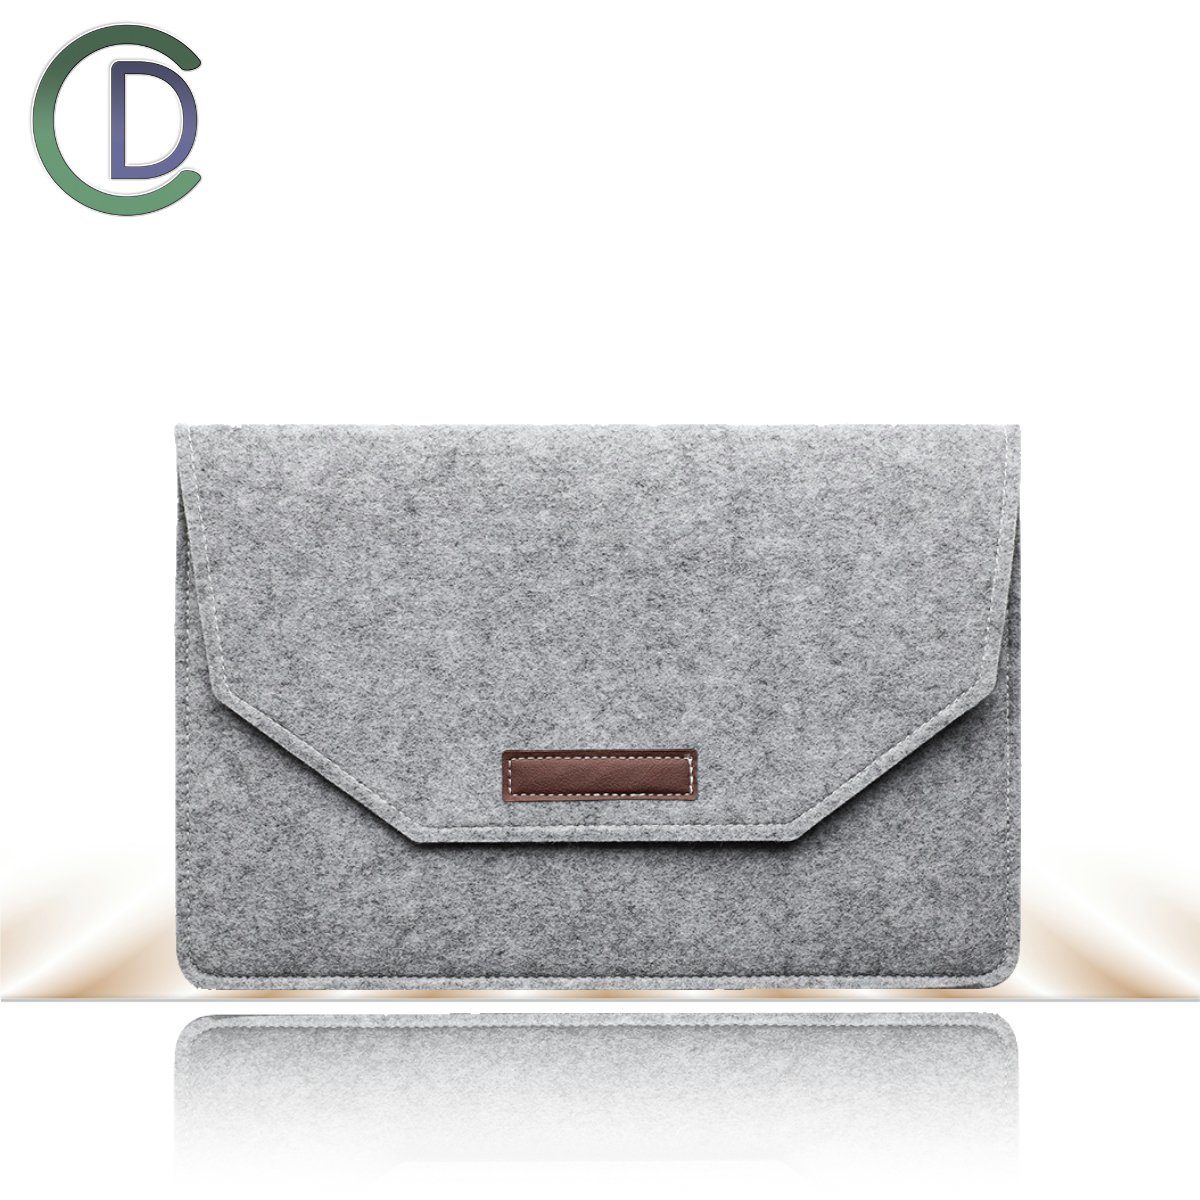 Von internationalen Prominenten bevorzugt Cradys Laptoptasche CraDys 13,3 15 schwarz Filz MacBook Laptop-Tasche Air / Sleevy Pro SleeveHülle Zoll Kompatibel